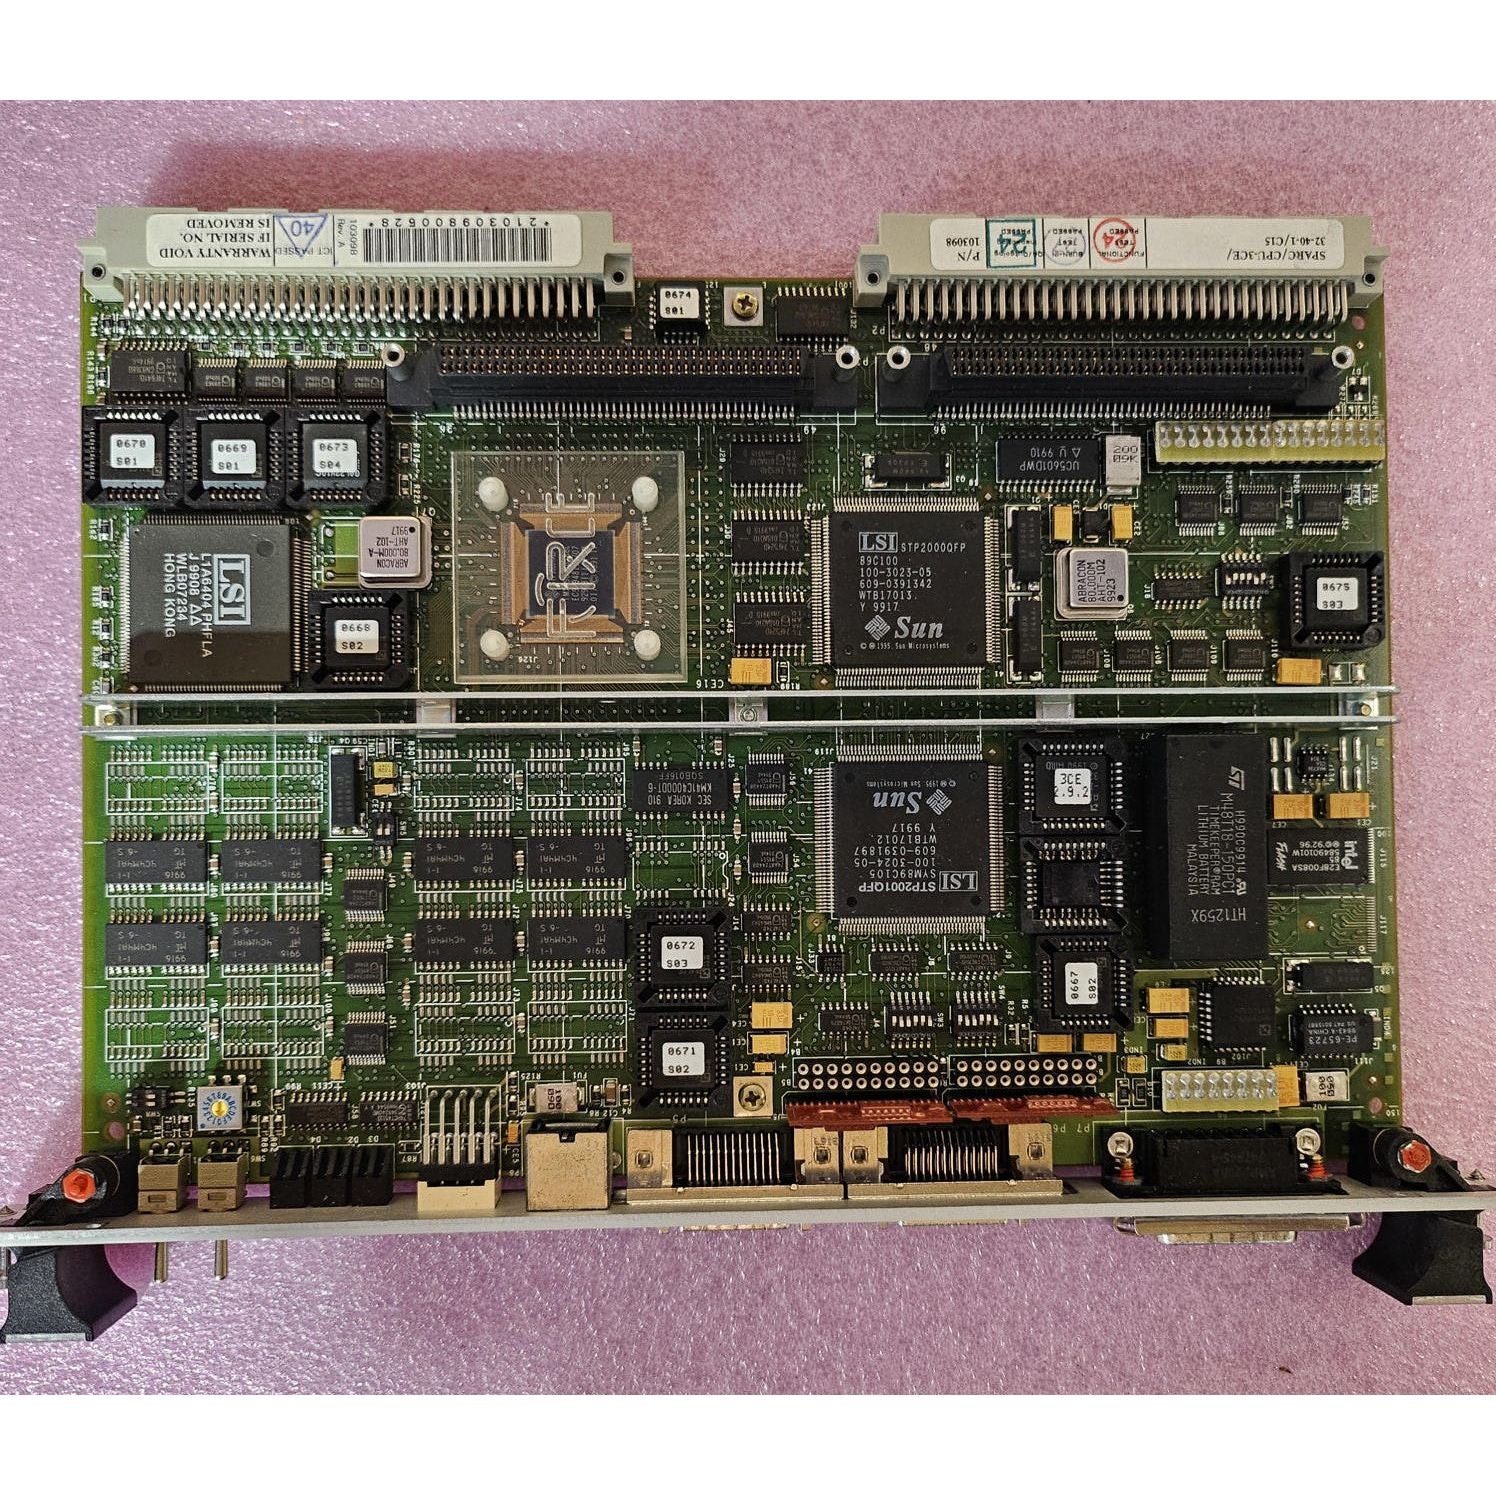 CPU-3CE / 32-40-1 | Computer erzwingen